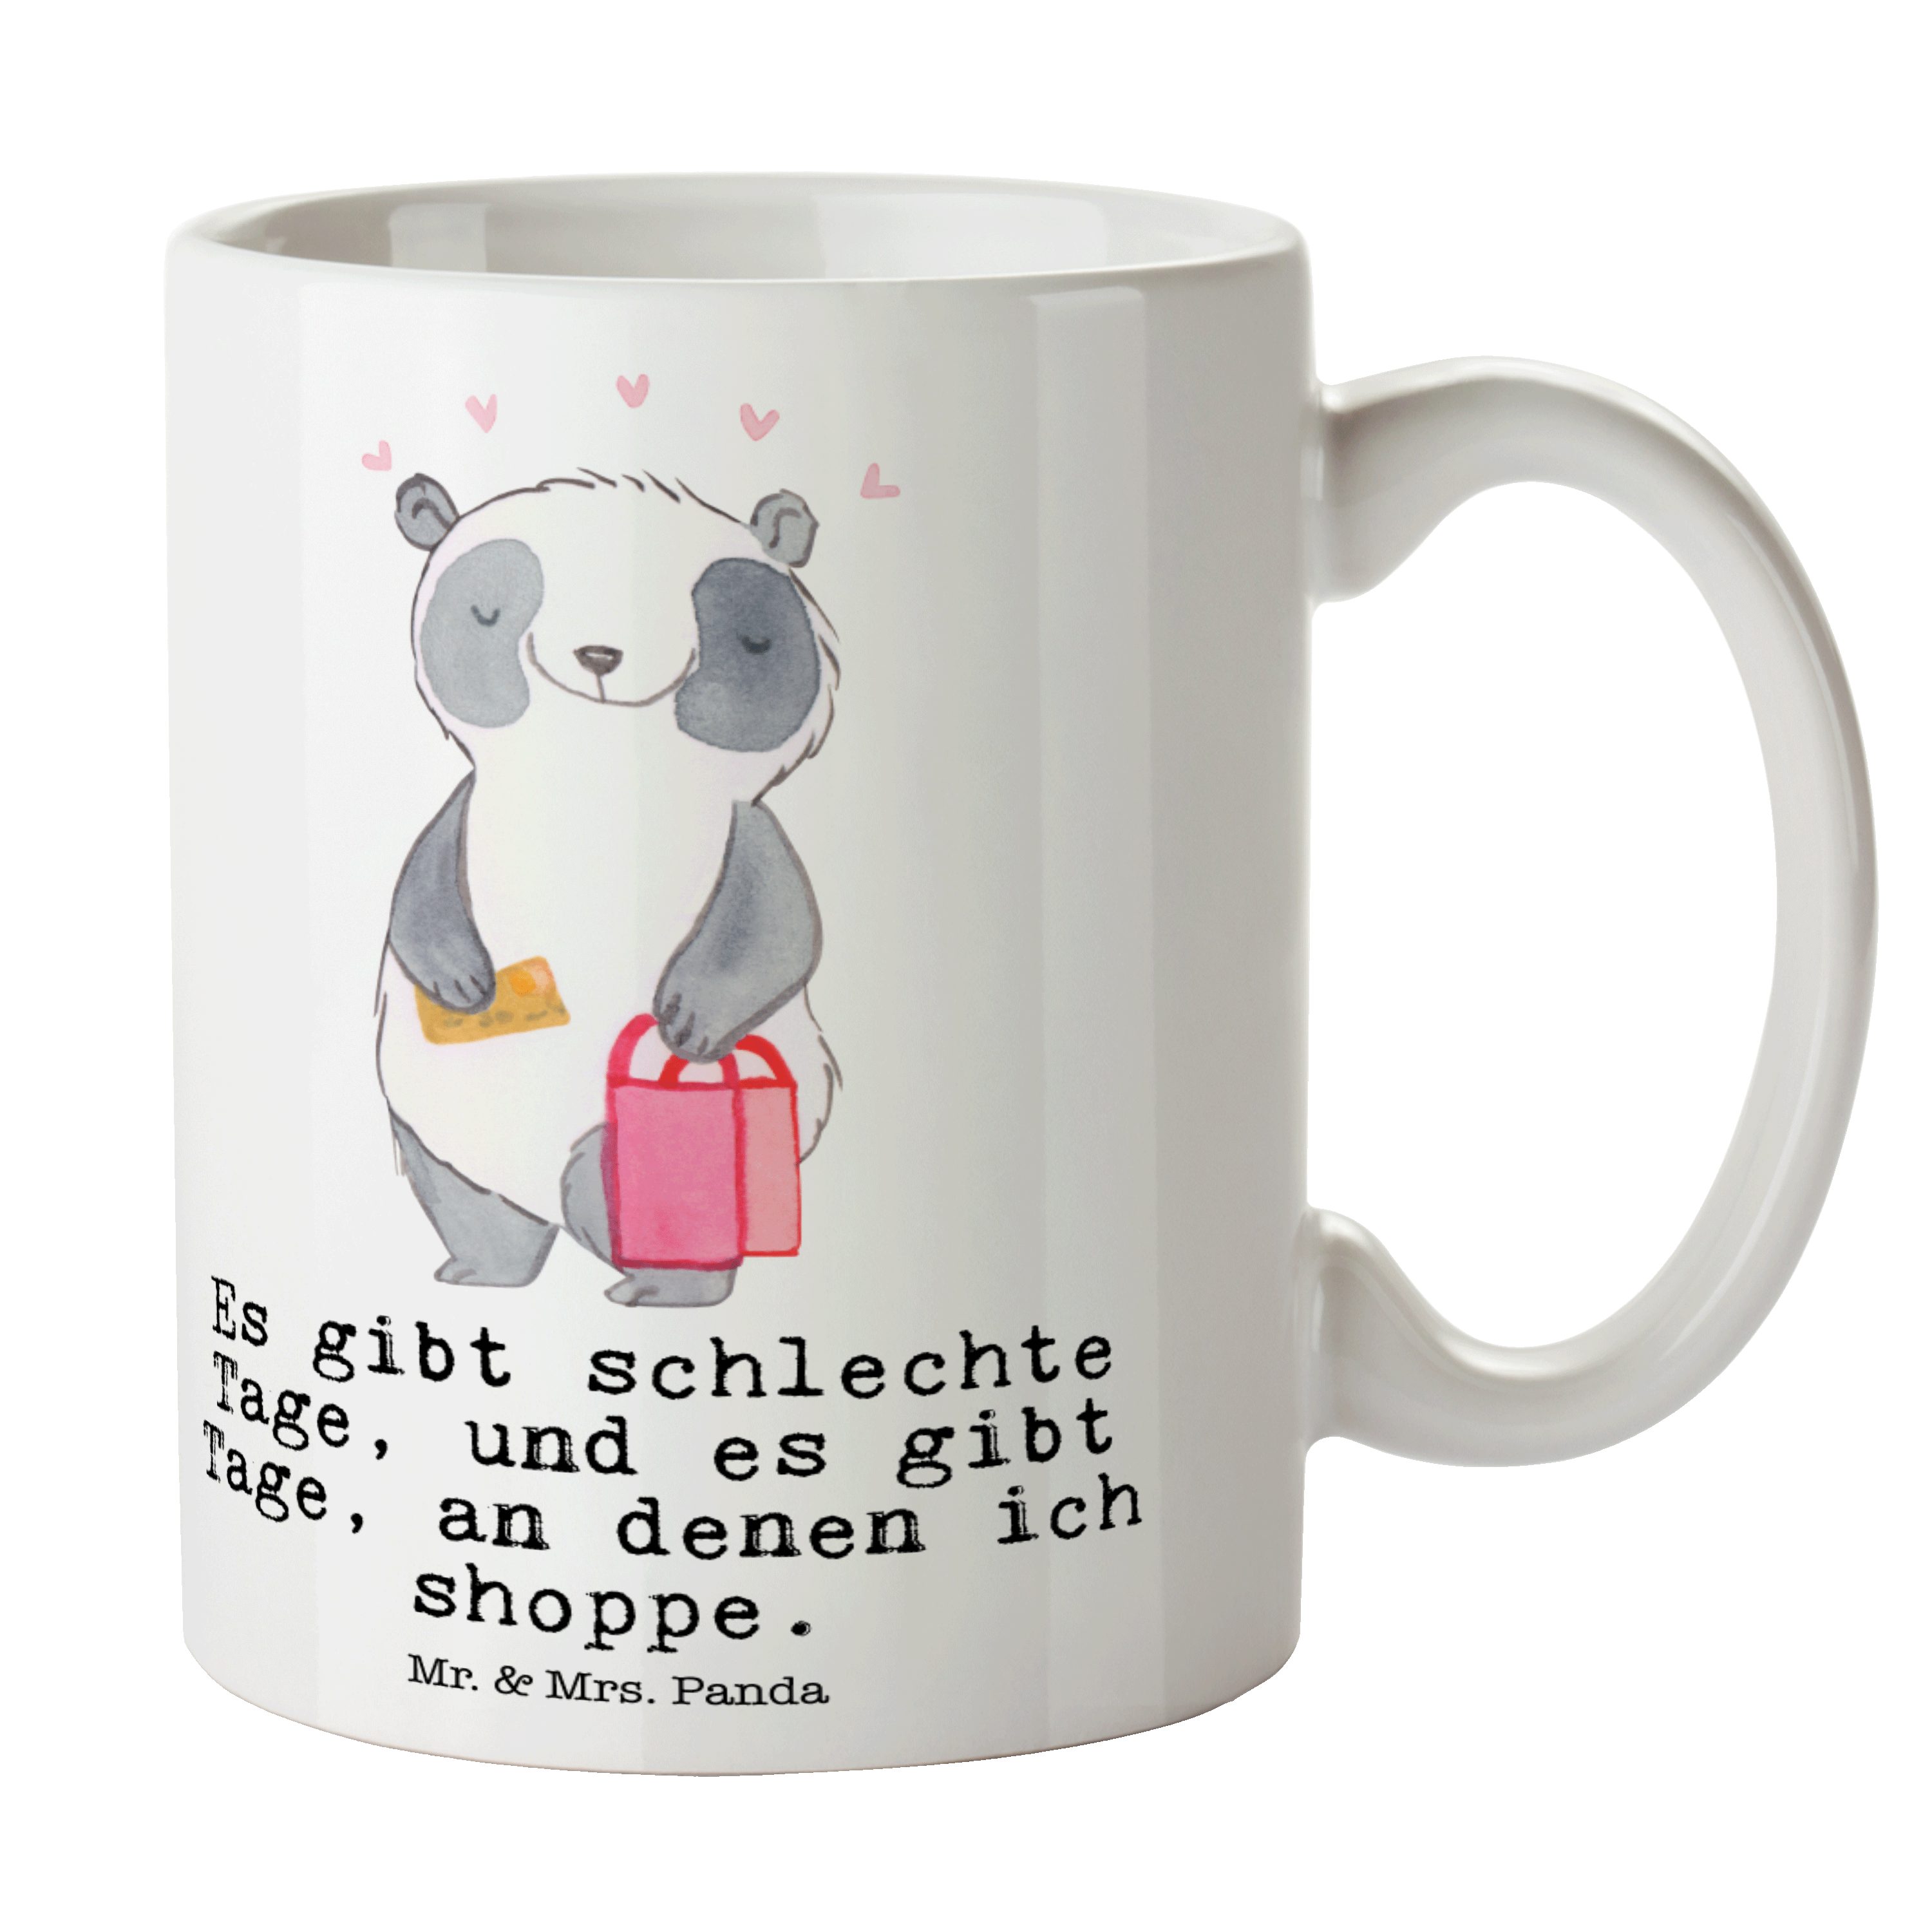 Keramik & Danke, Panda Tasse Mr. Tage einkaufen, Mrs. Weiß Panda Shopping - Geschenk, Auszeichnung, -